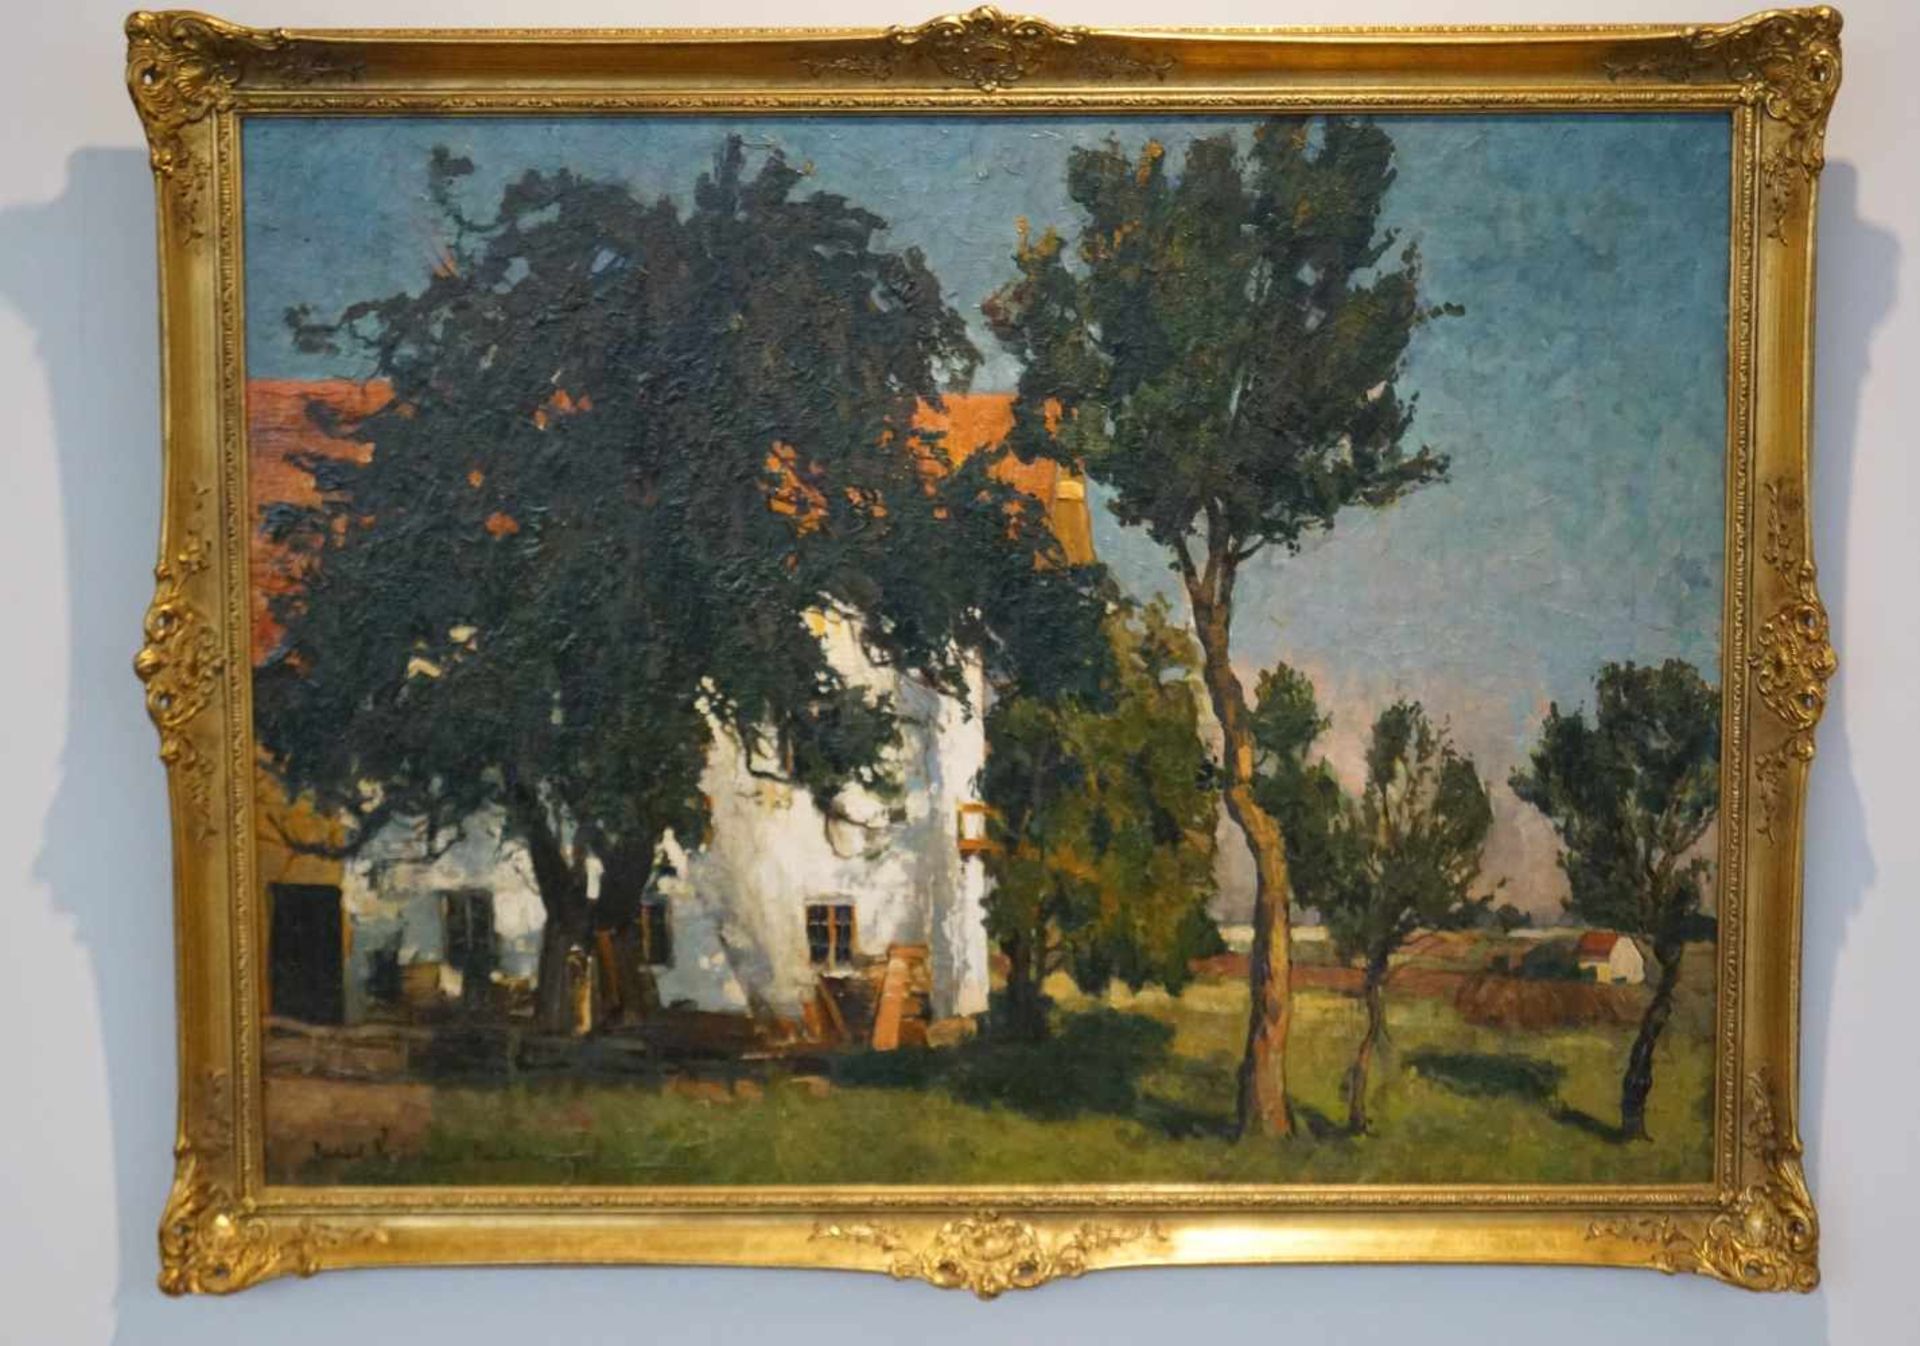 "Gutshof unter Kiefern" Richard Kaiser (1868-1941), Goldrahmen, Öl/Lwd, Höhe 75,8 cm x Breite 102,